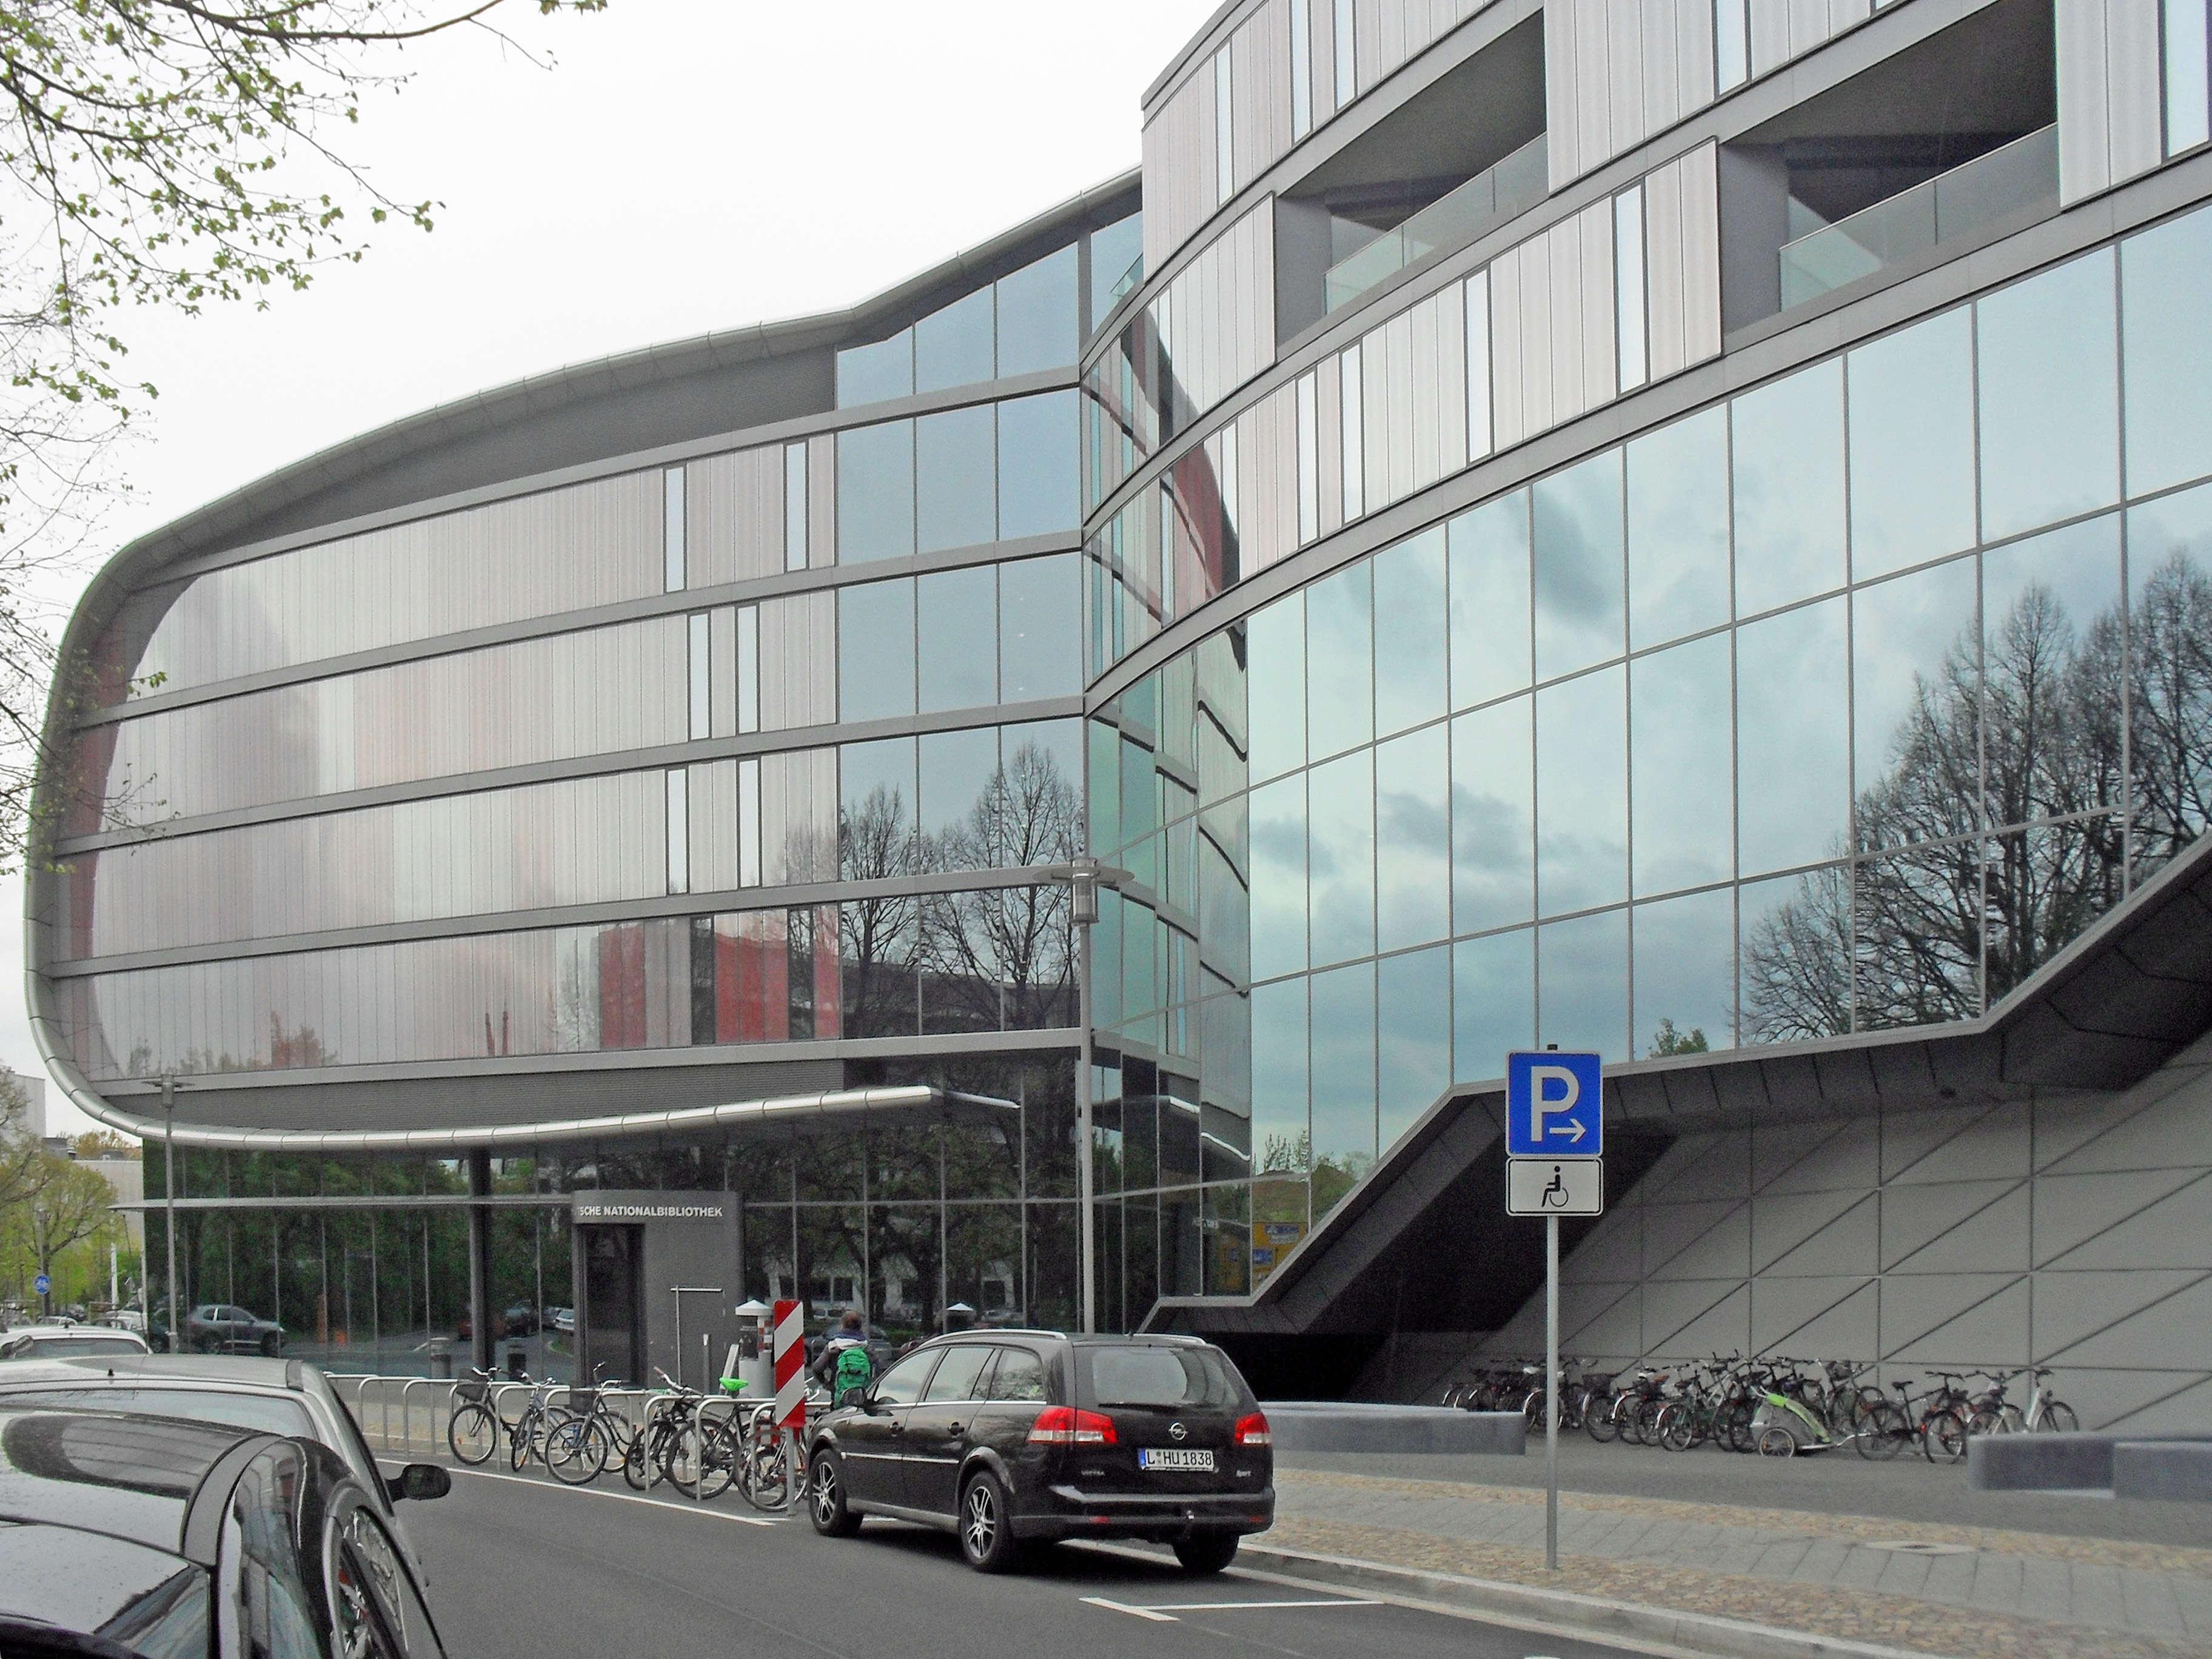 The 2011 annex designed by Stuttgart architect [[Gabriele Glöckler]]